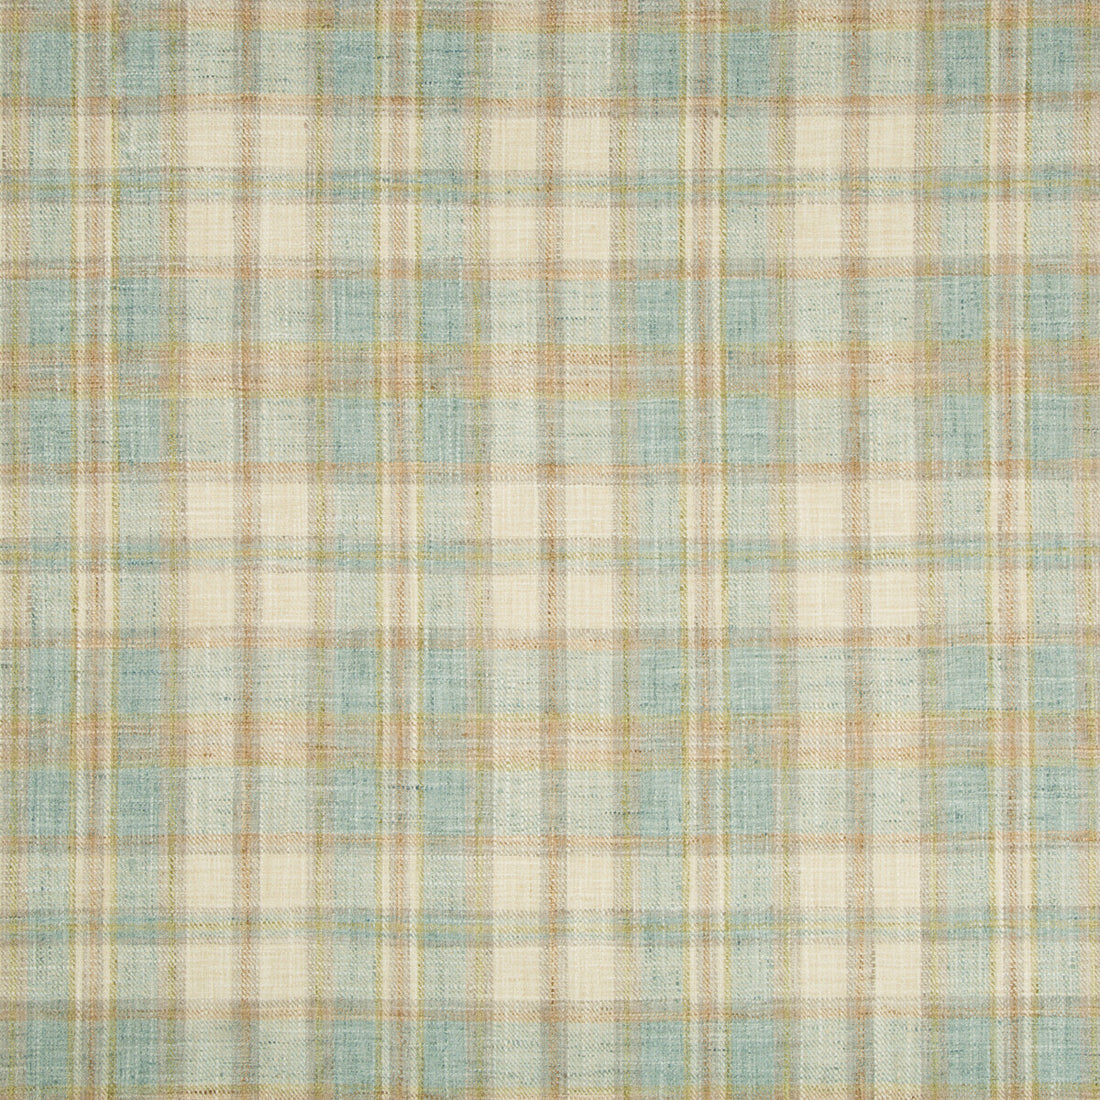 Kravet Basics fabric in 35194-1523 color - pattern 35194.1523.0 - by Kravet Basics